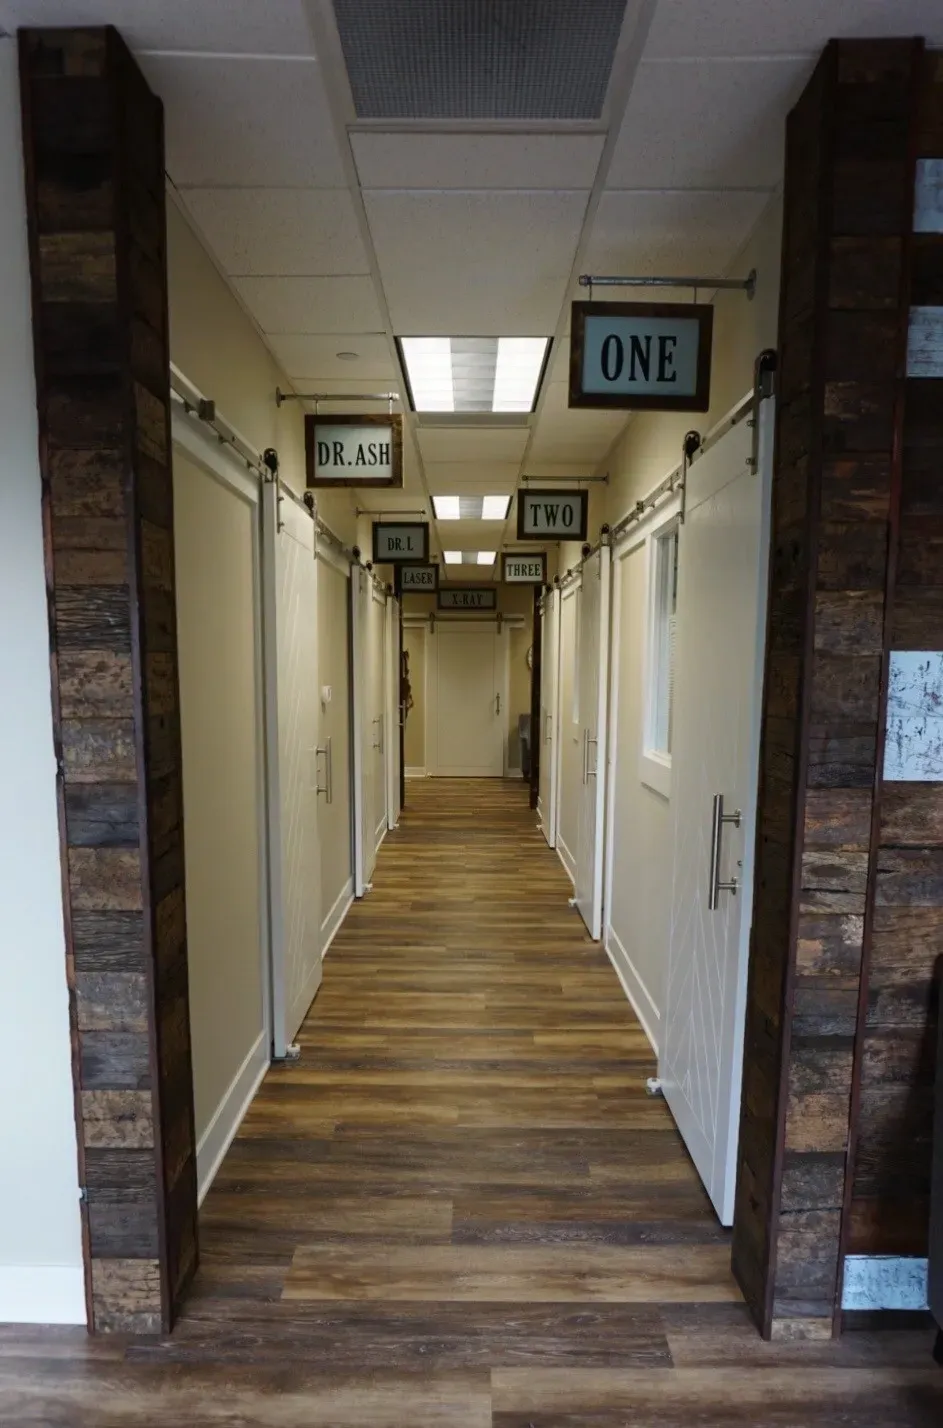 A hallway with two doors and one door open.